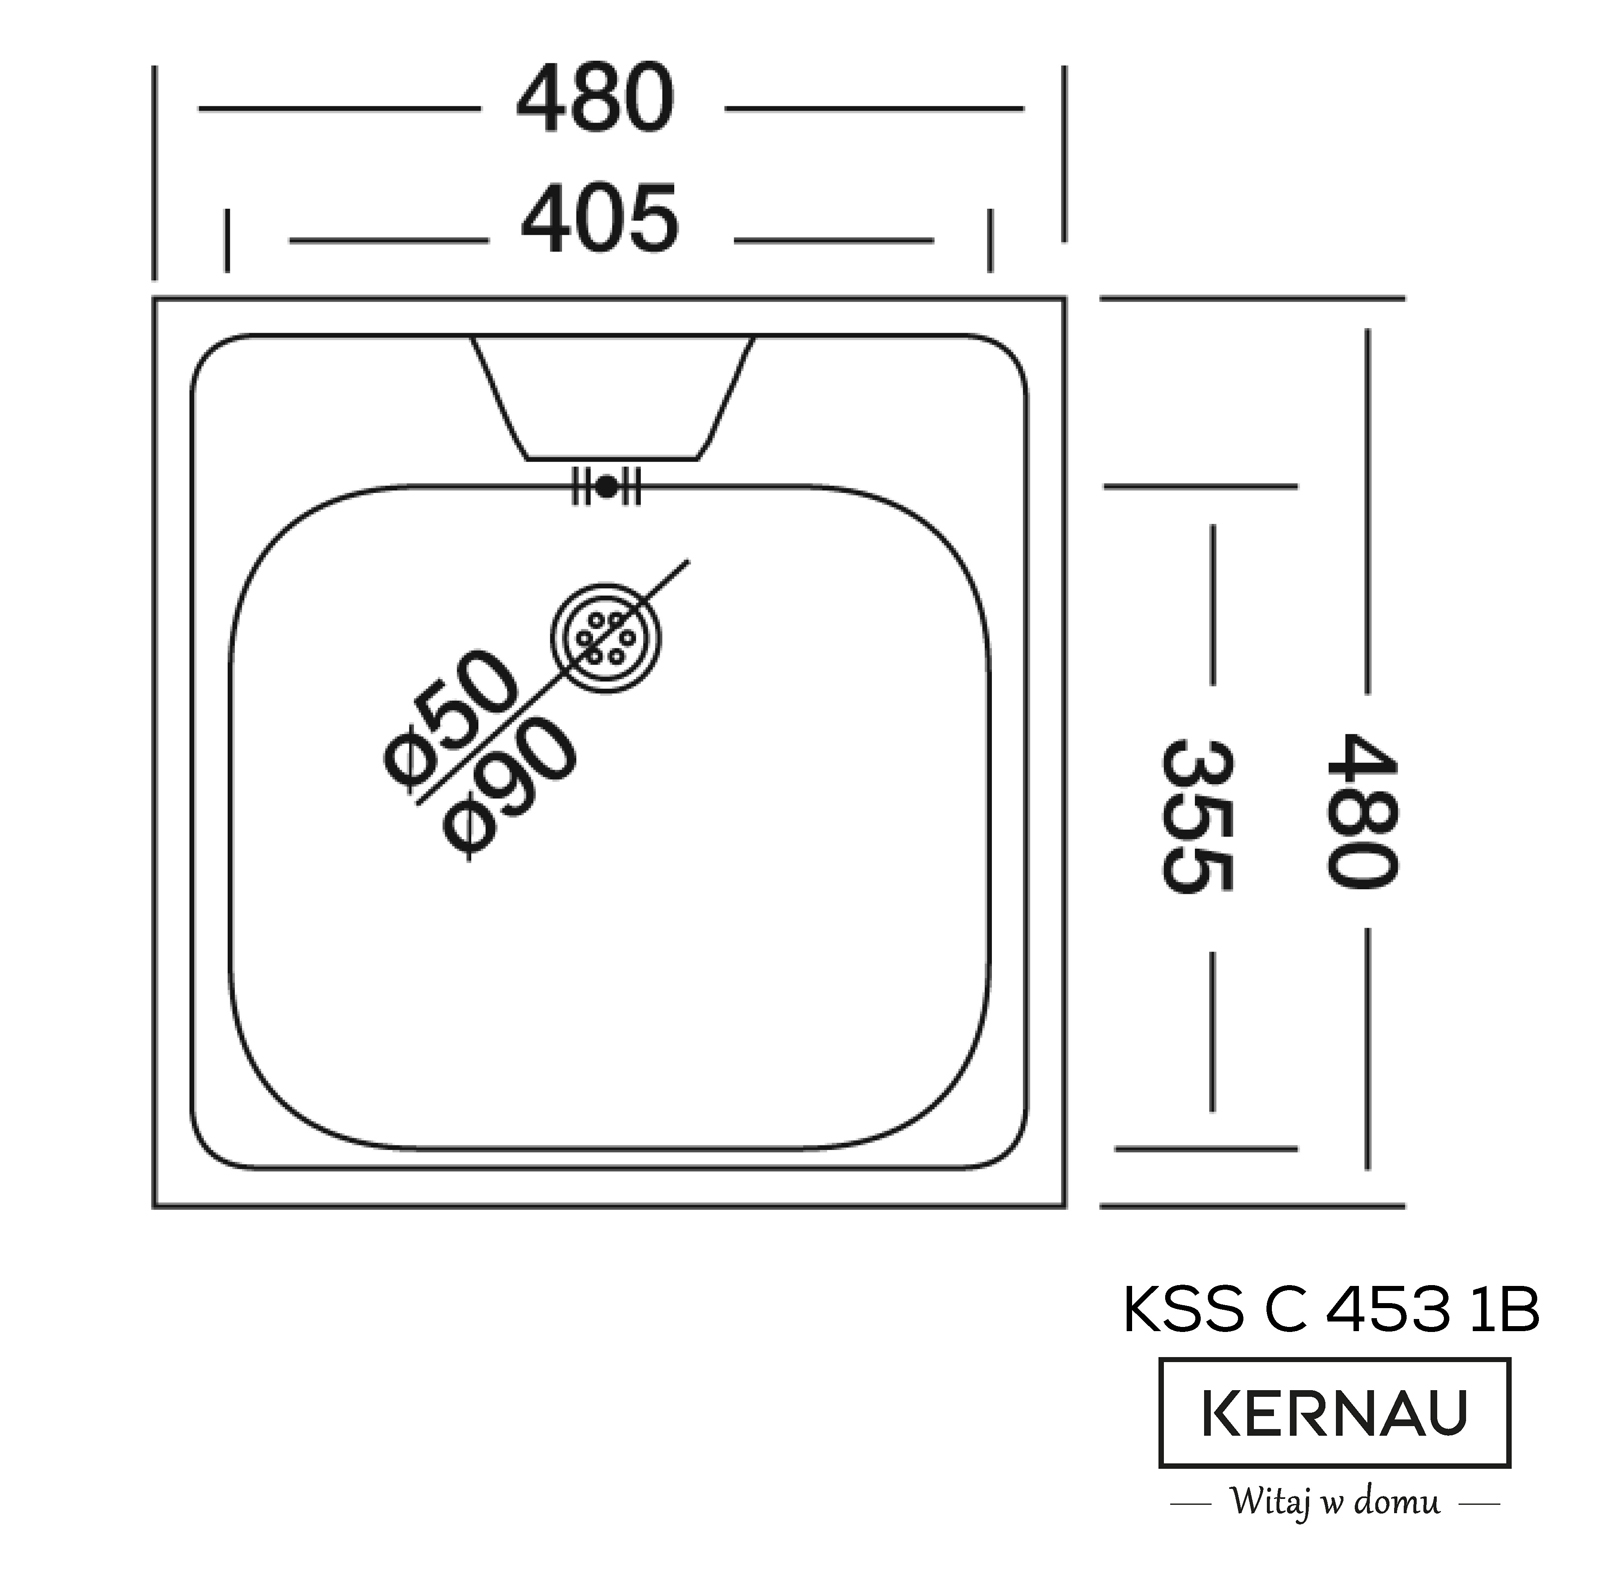 KSS C 453 1B LINEN